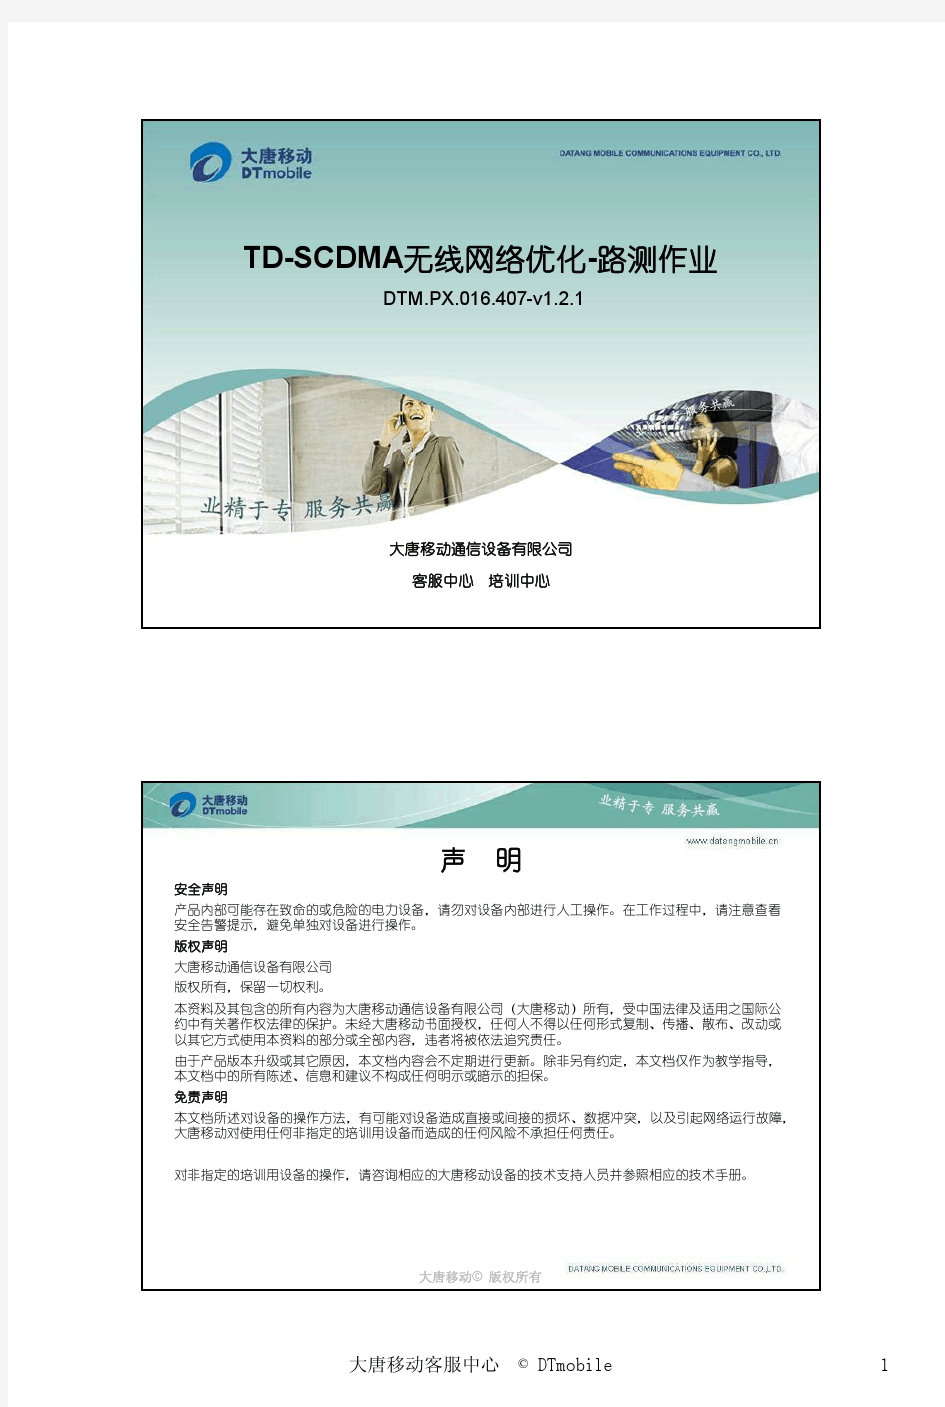 TD-SCDMA无线网络优化-路测作业 _V1.2.1